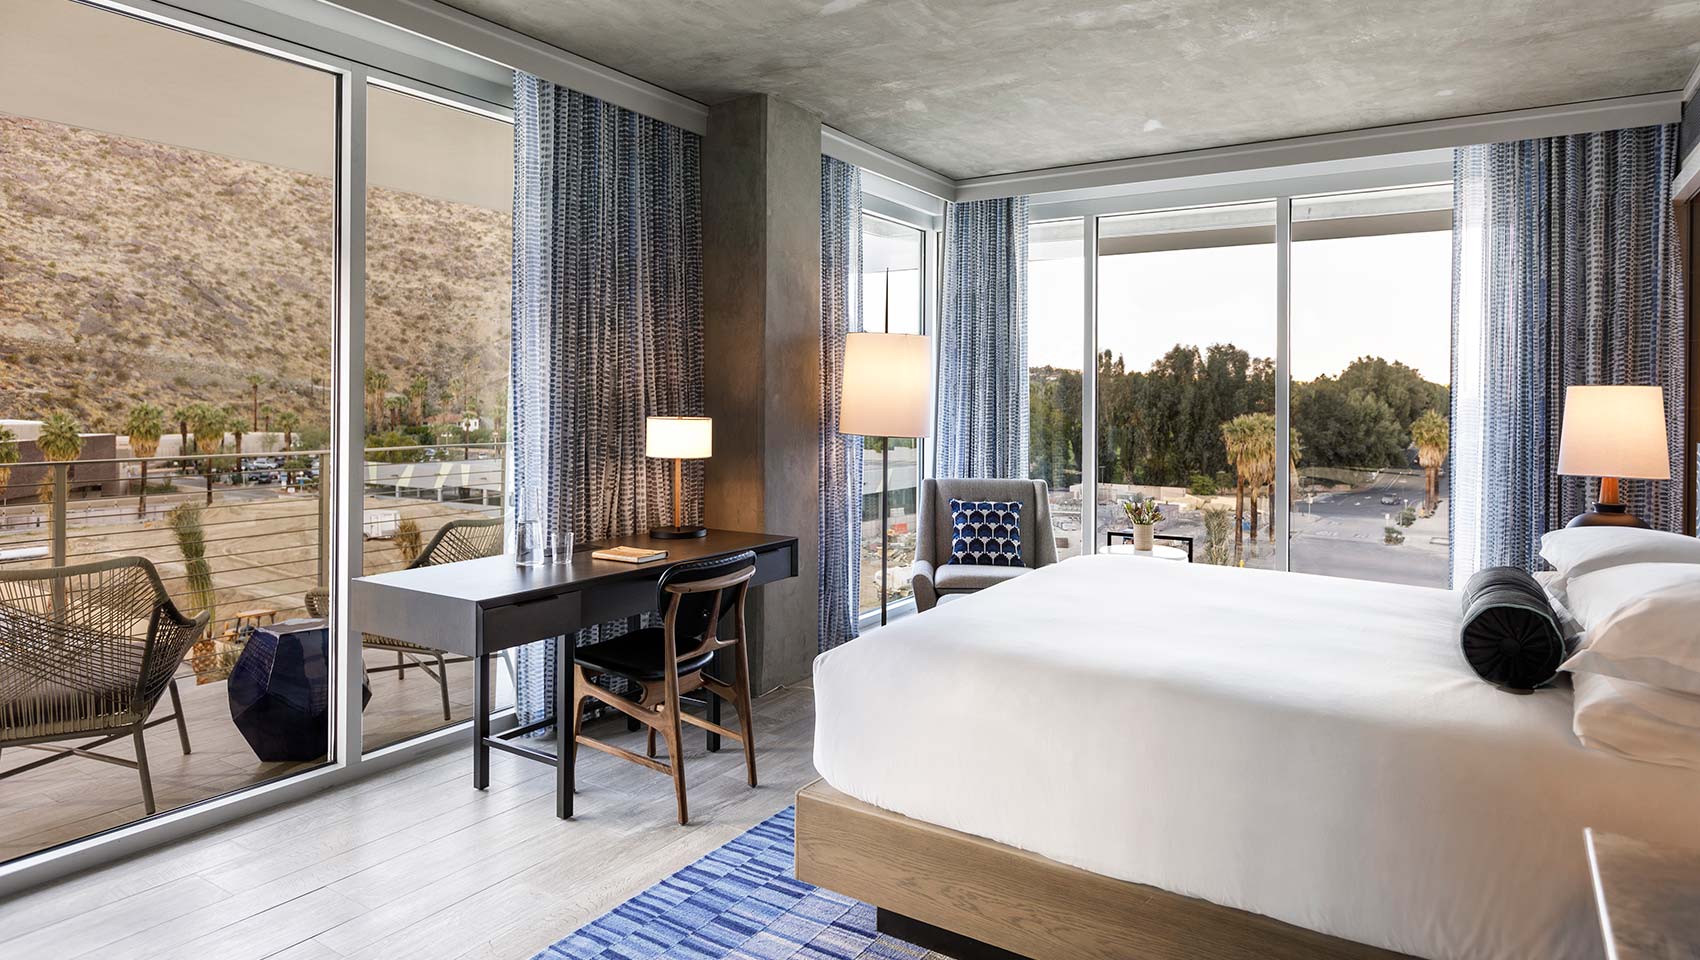 King Spa Bedroom Windows Ceiling To Floor Rowan Palm Springs Cd9542dc 